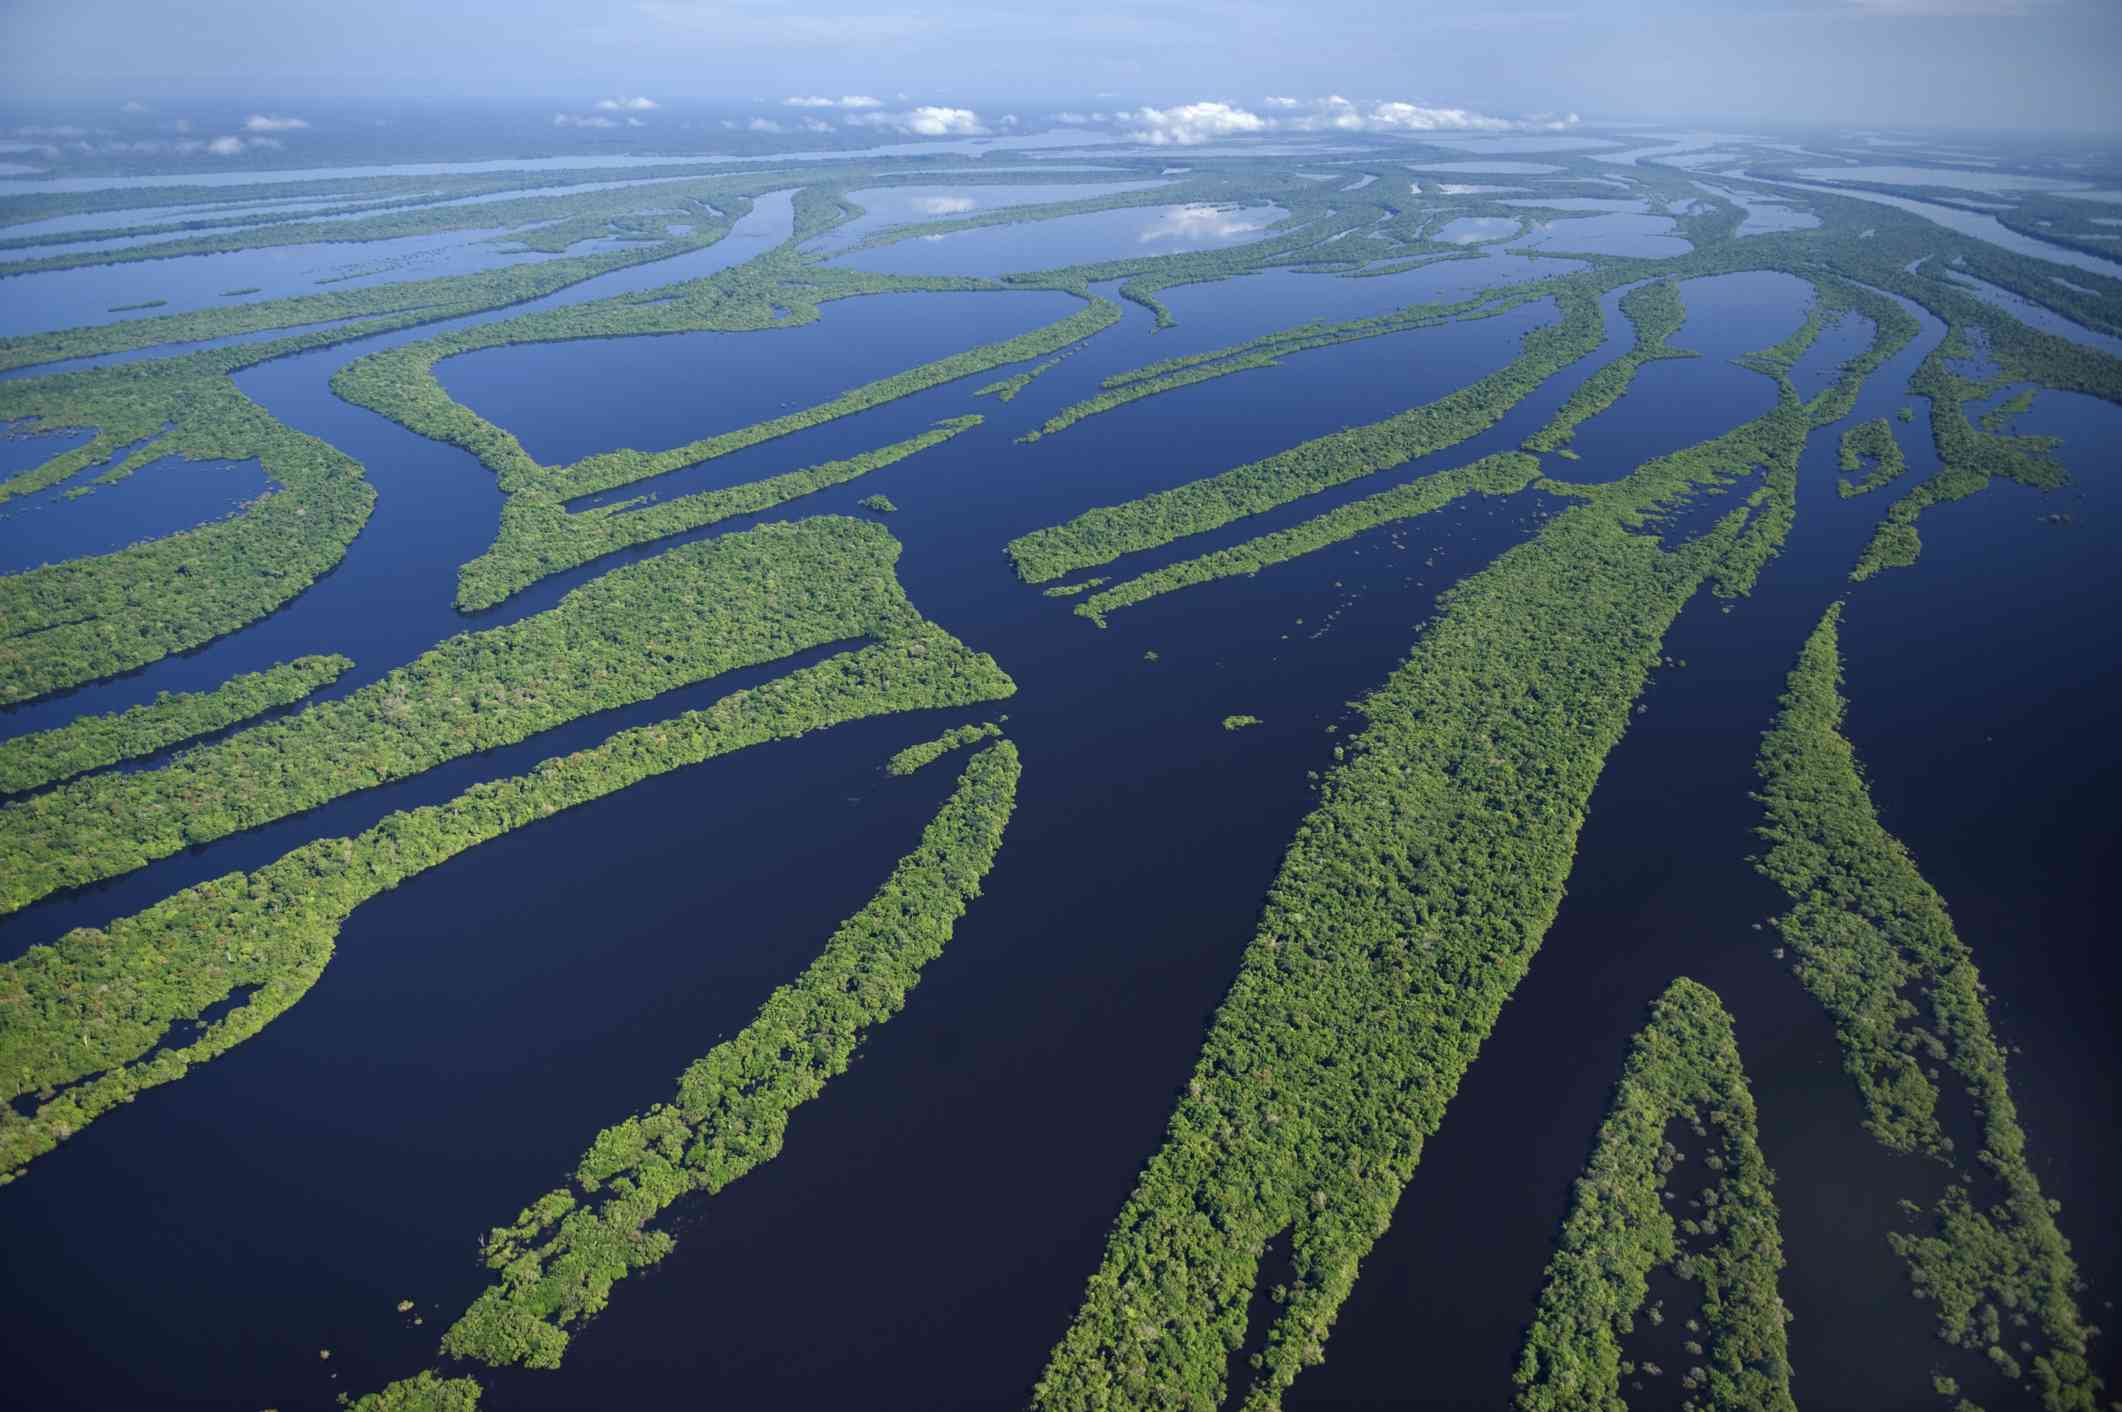 Una vista aérea del río Amazonas con los niveles de agua altos, creando islas dentro del río